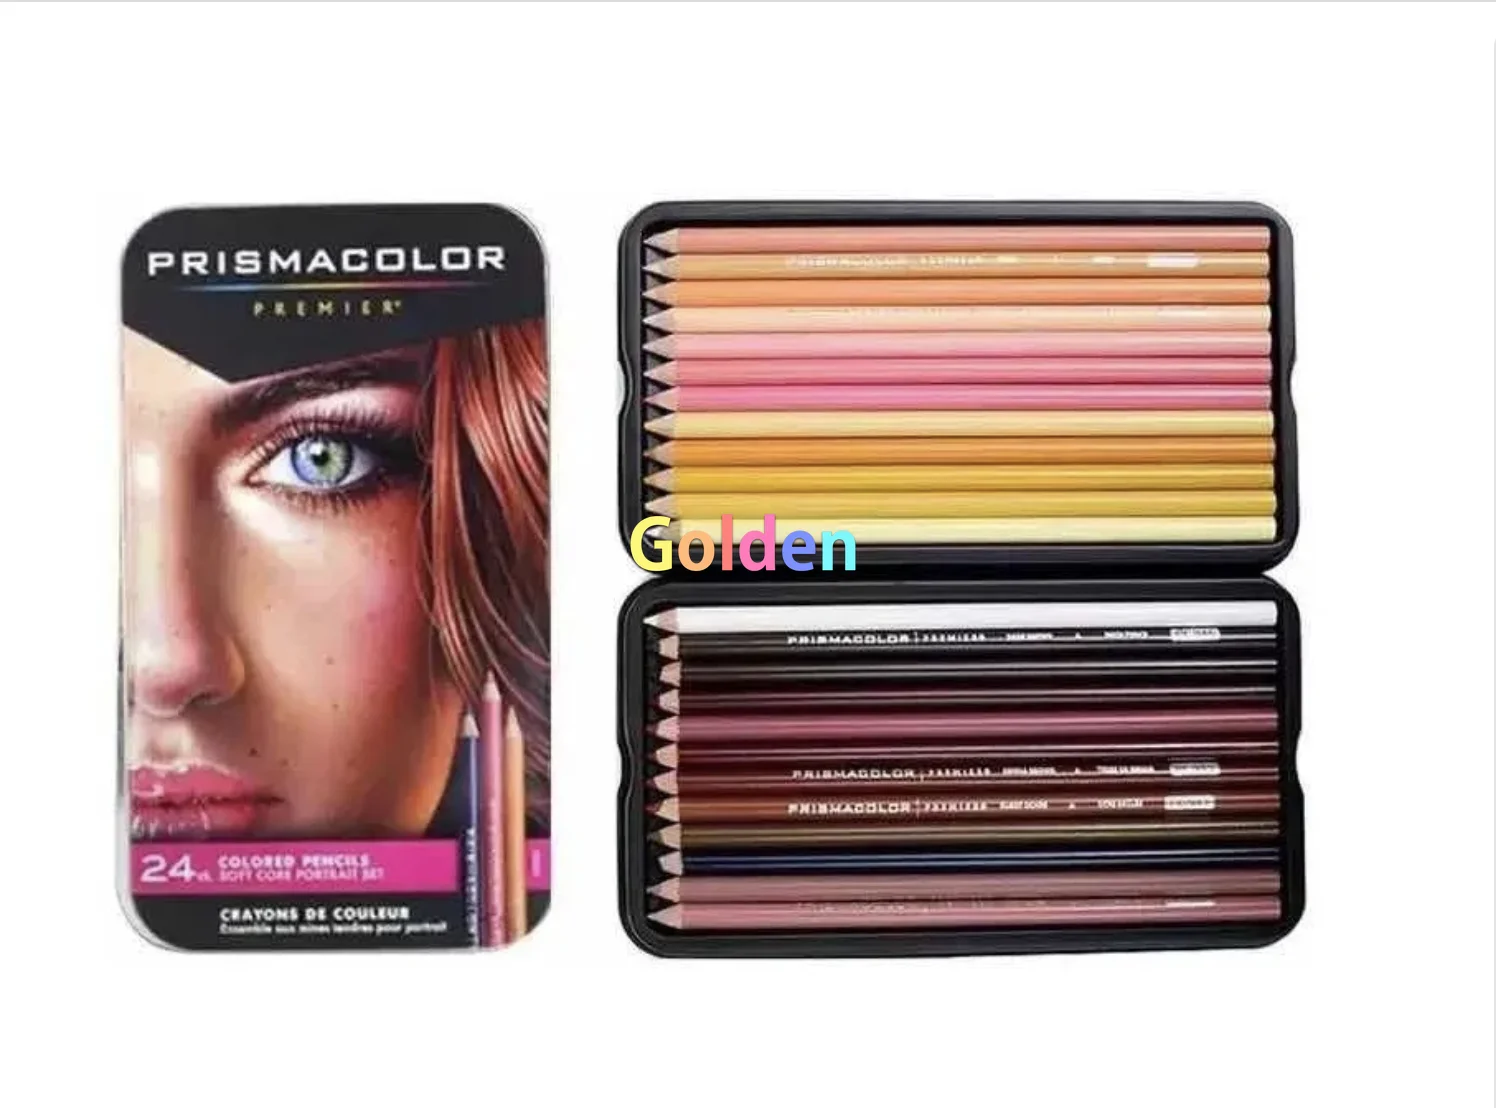 Prismacolor Premier® Soft Core Colored Pencil Tin Set of 36